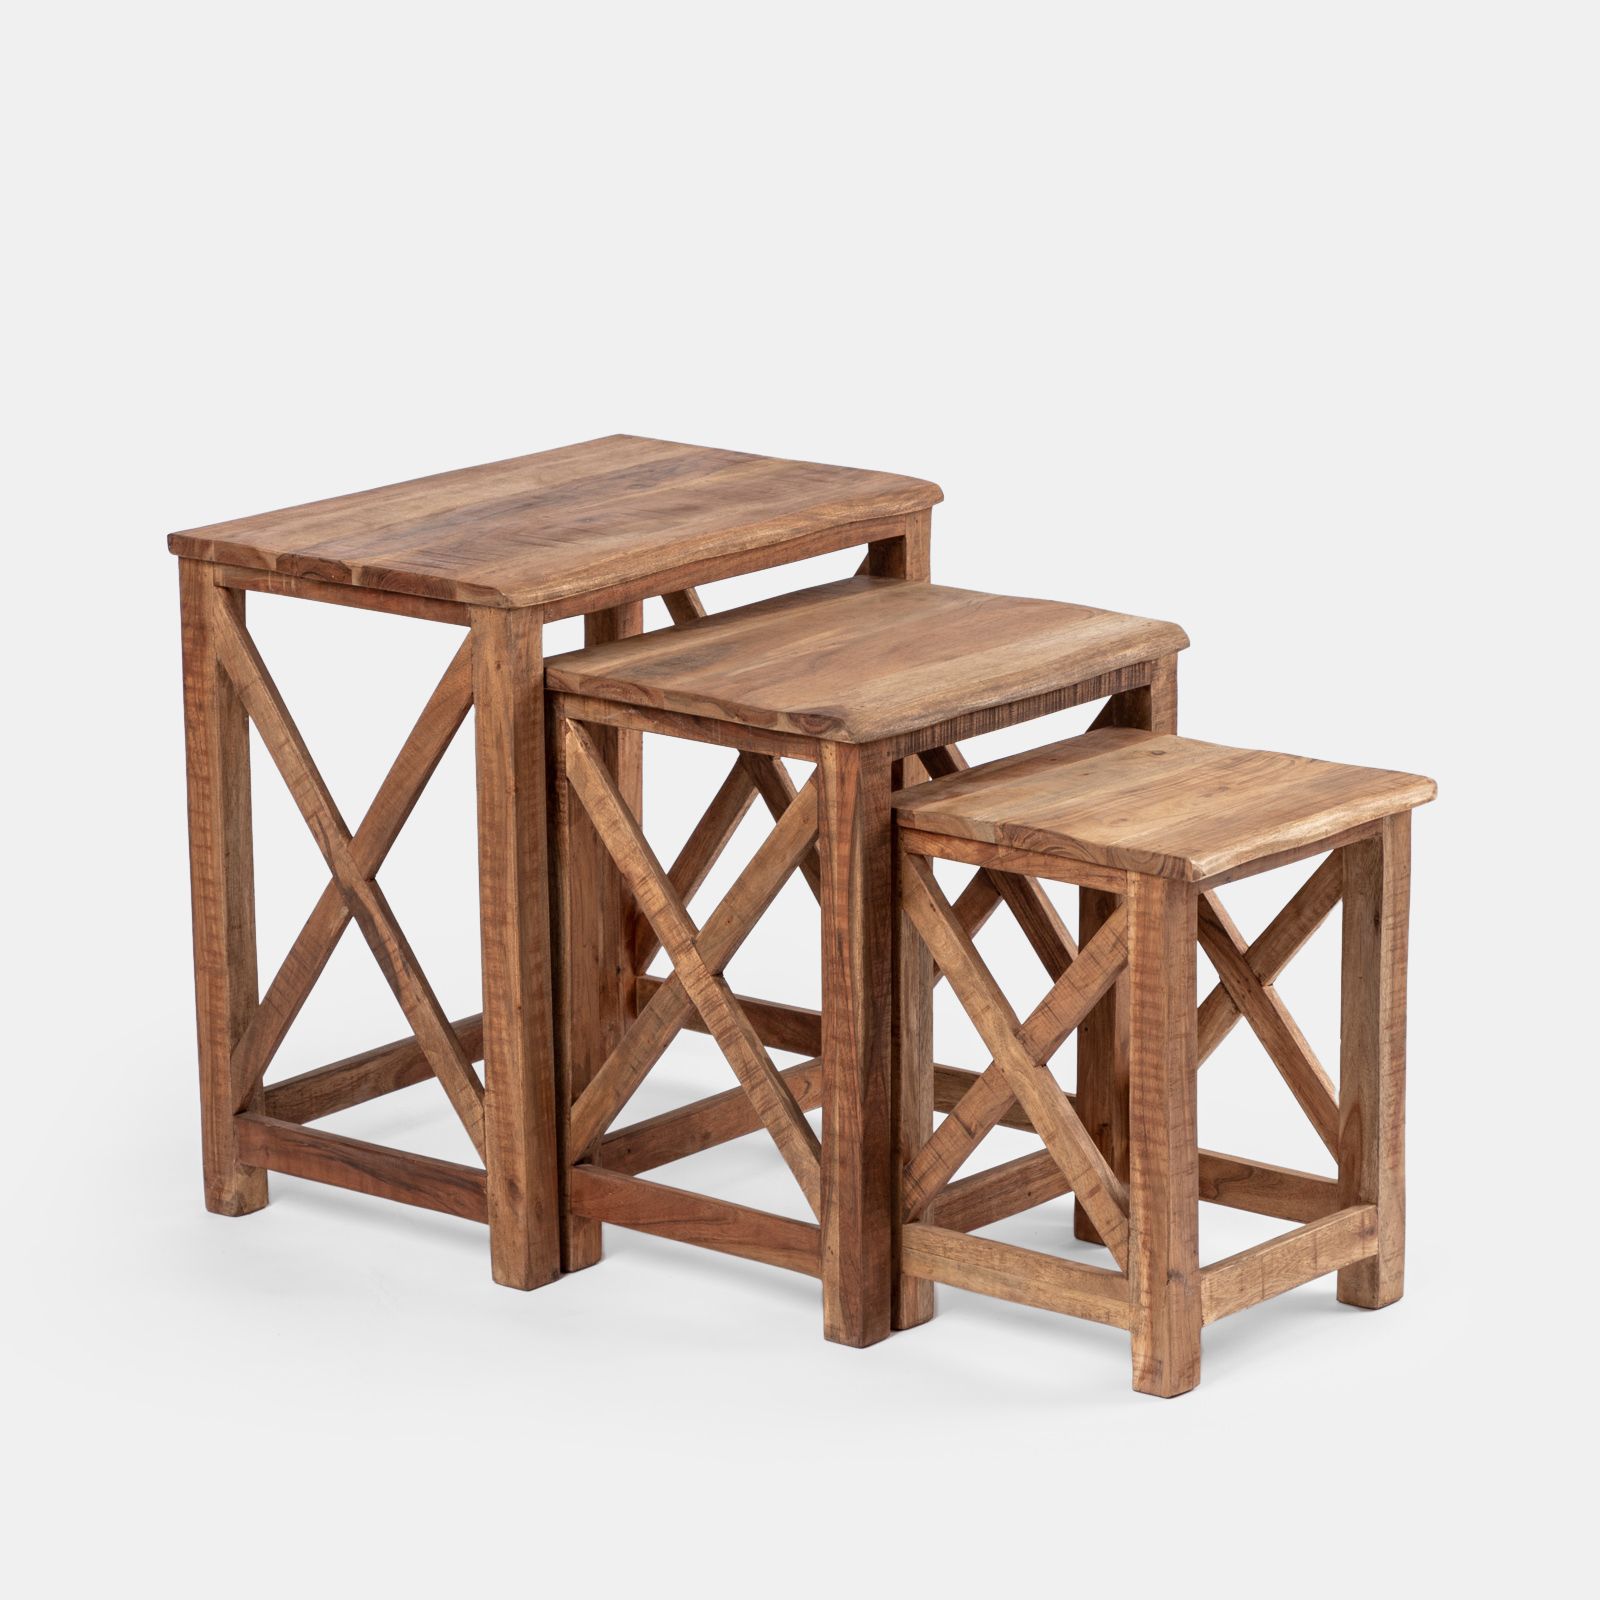 Set 3 tavolini in legno da interno - Freia Acacia